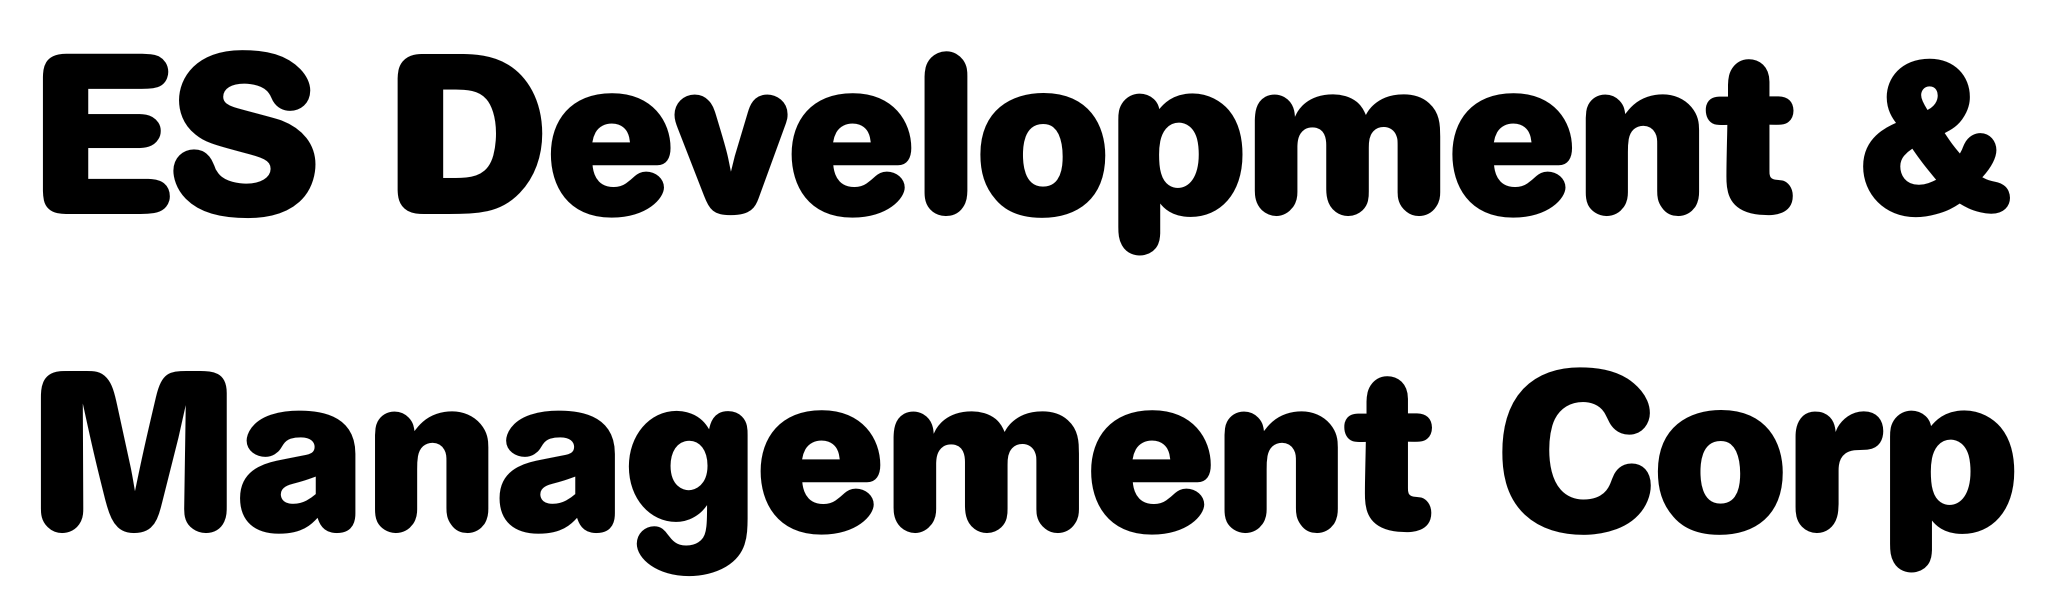 ES Development & Management Corp (Silver)